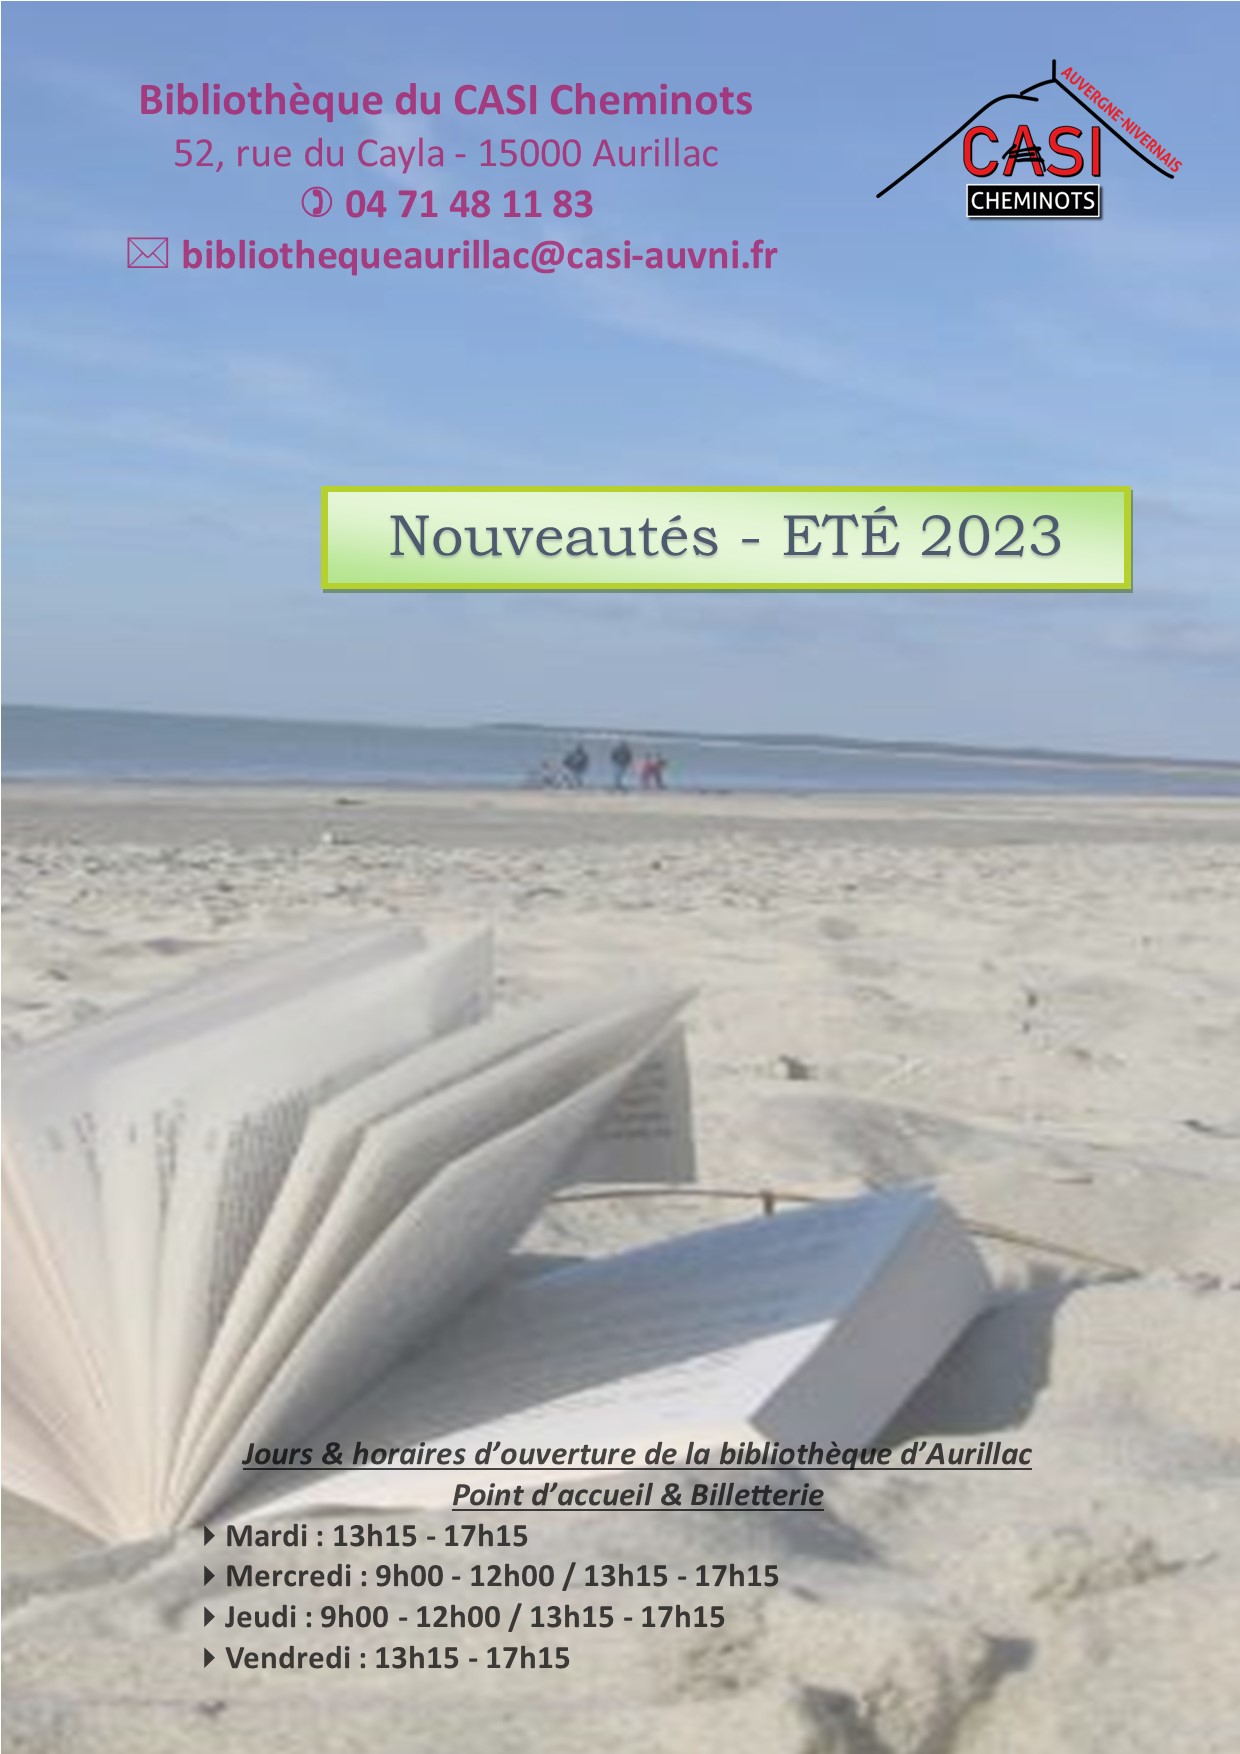 2023 Nouveautés ETE 2023 bib aurillac